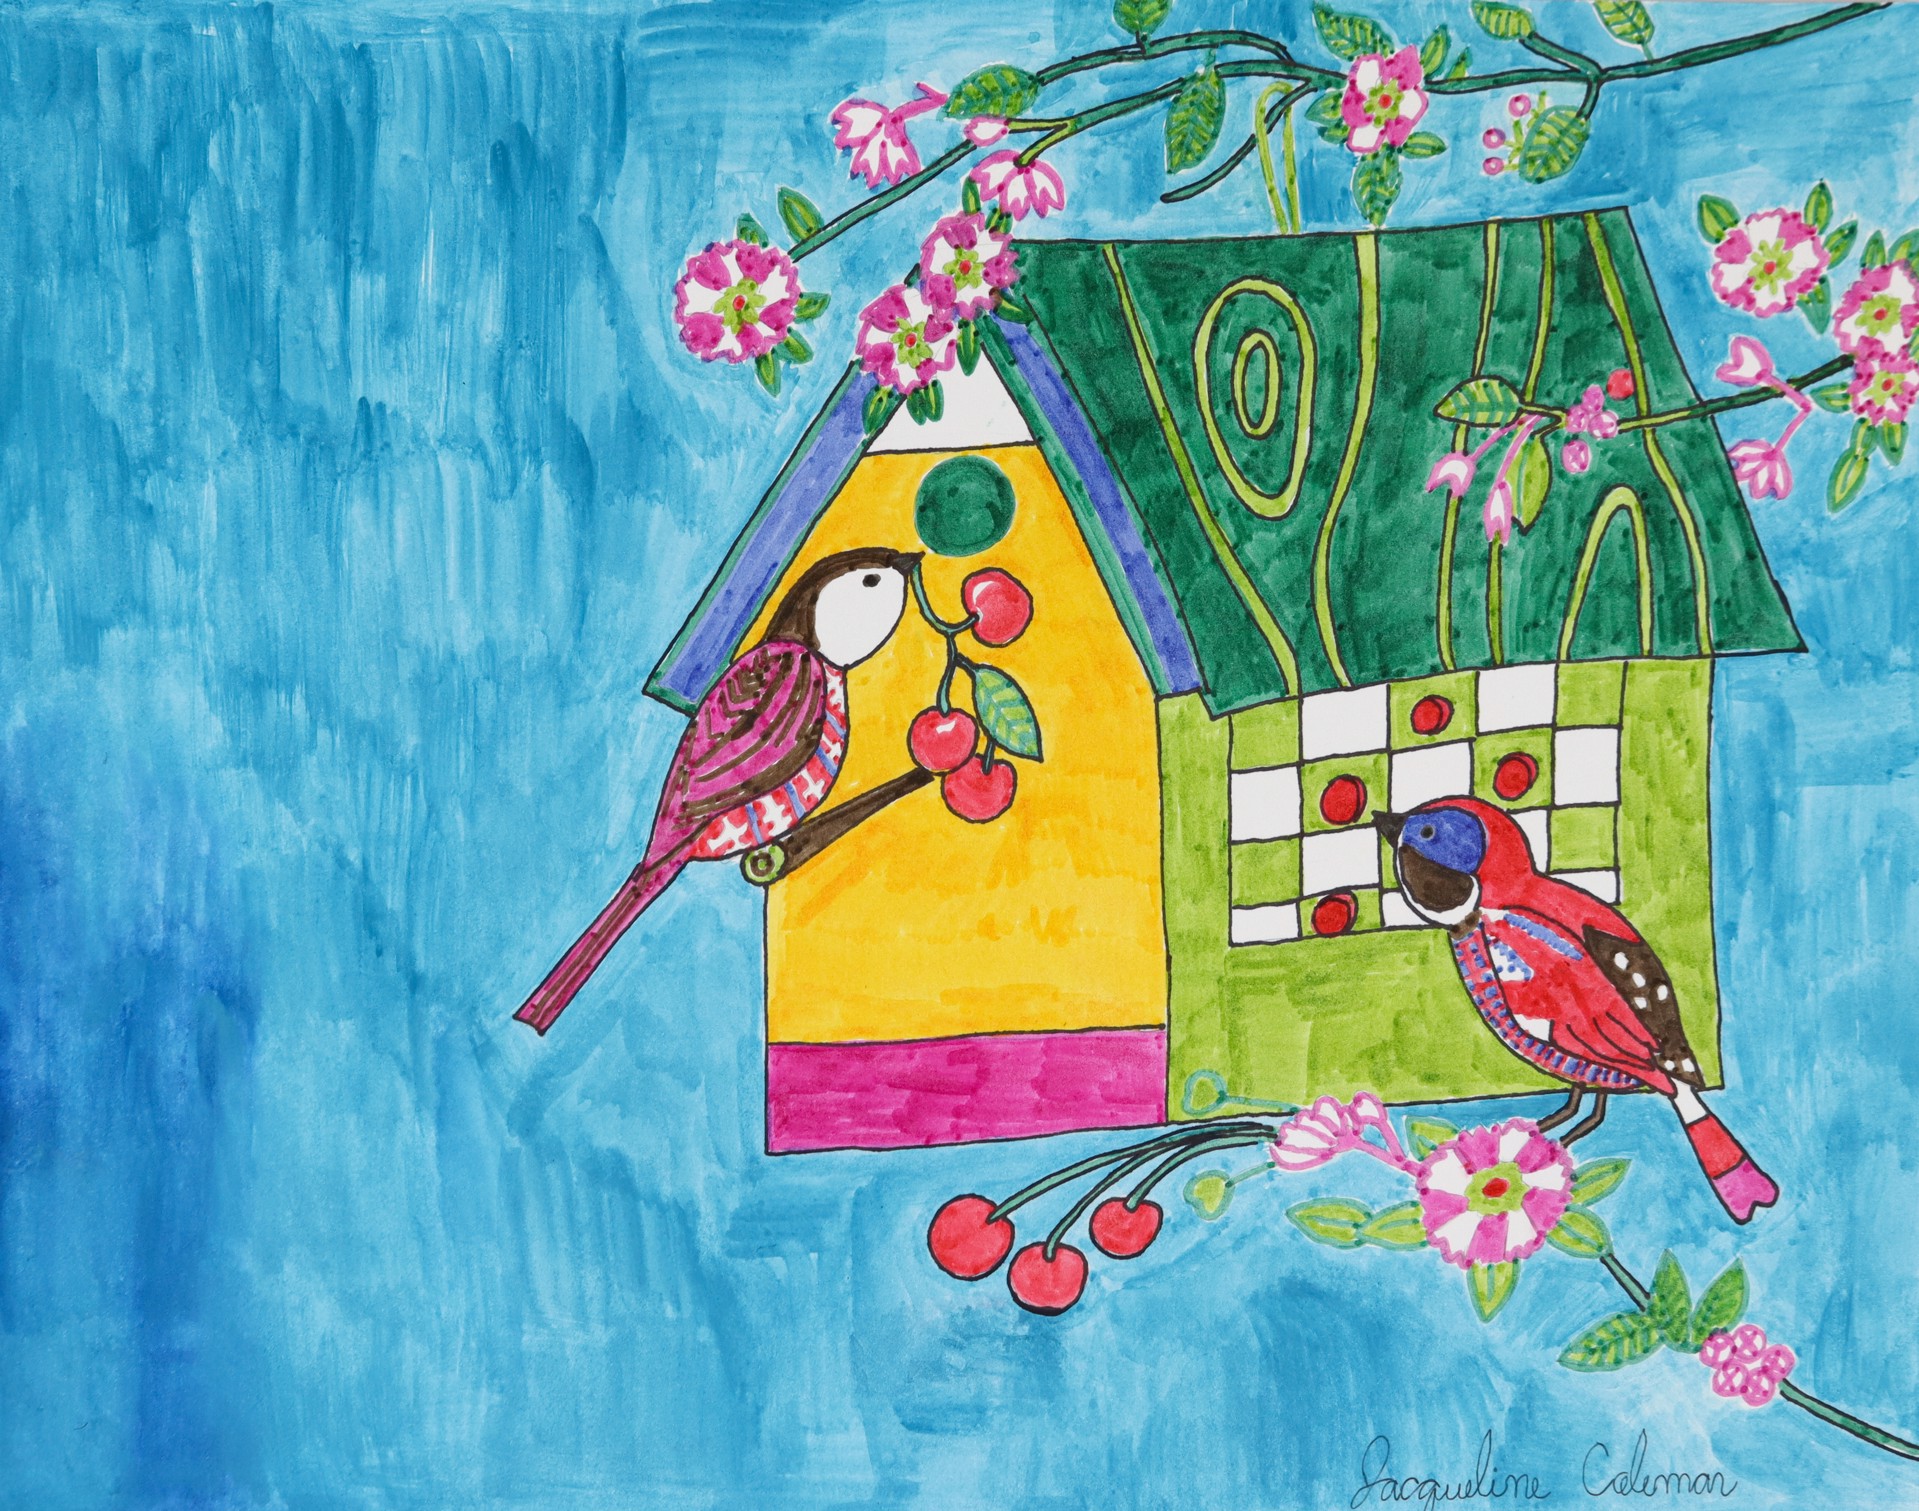 A Colorful Birdhouse by Jacqueline Coleman